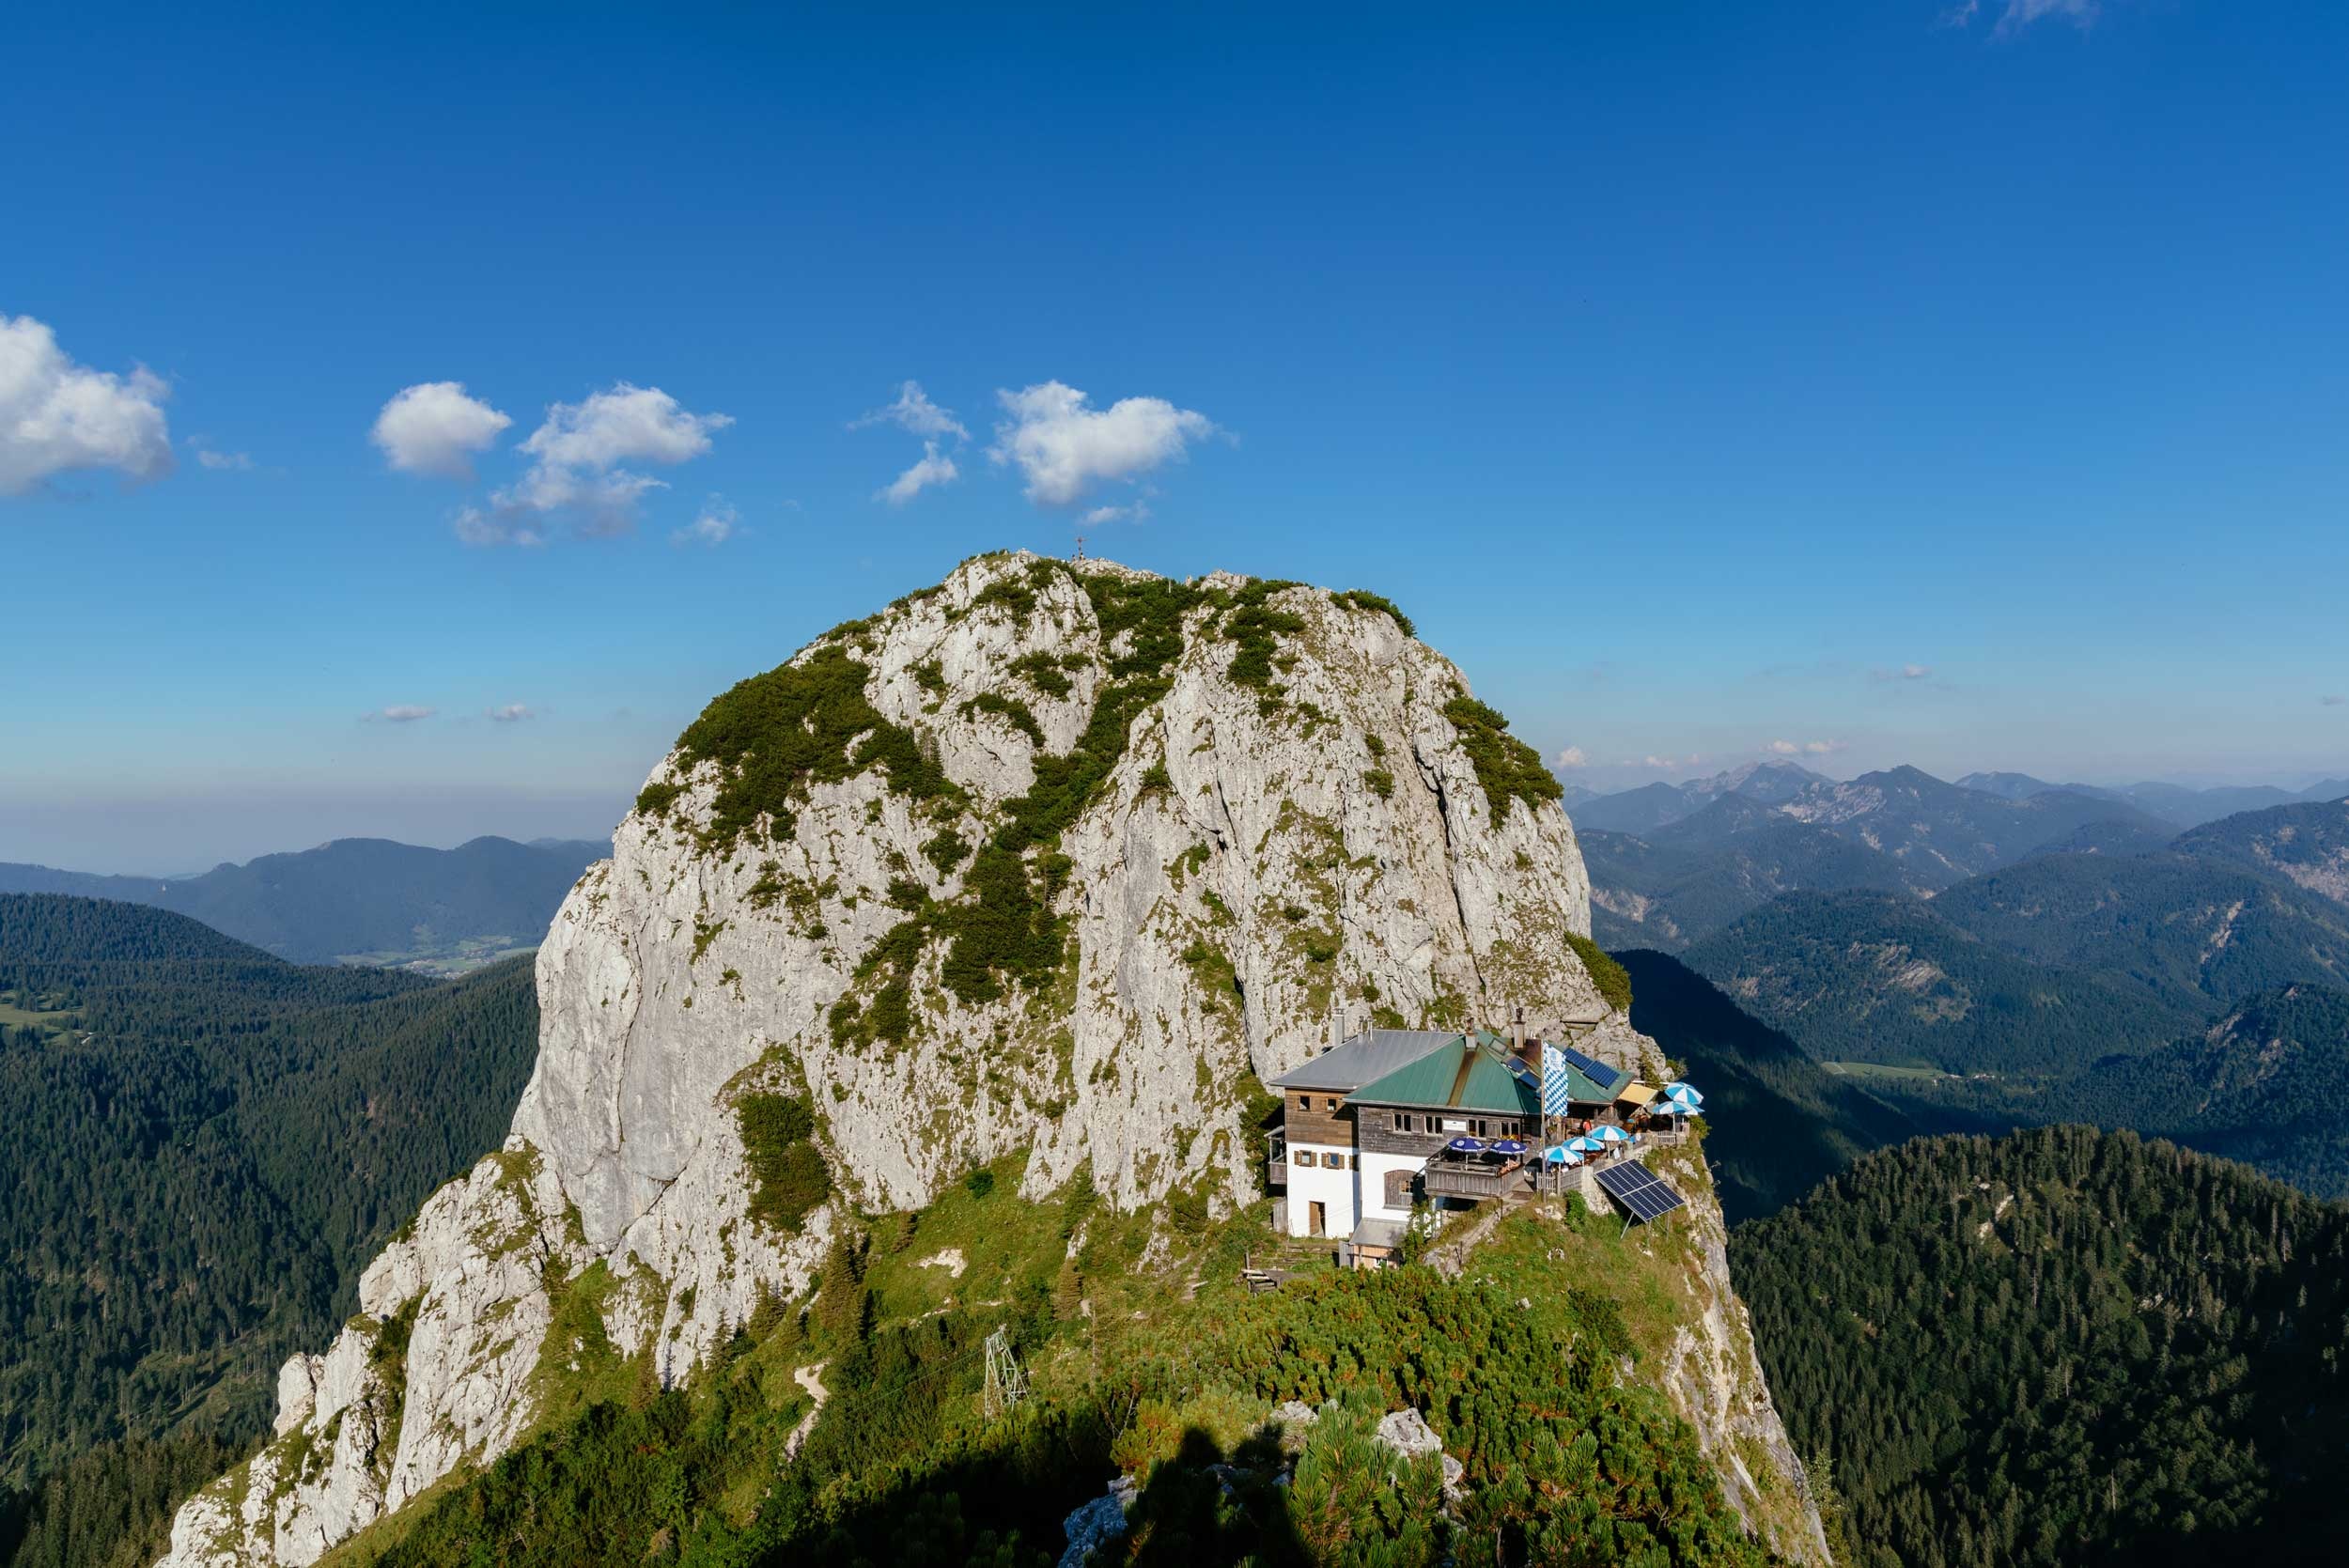 Wandern: Abstieg von der Tegernseer Hütte nach Bad Wiessee - 4:30 h